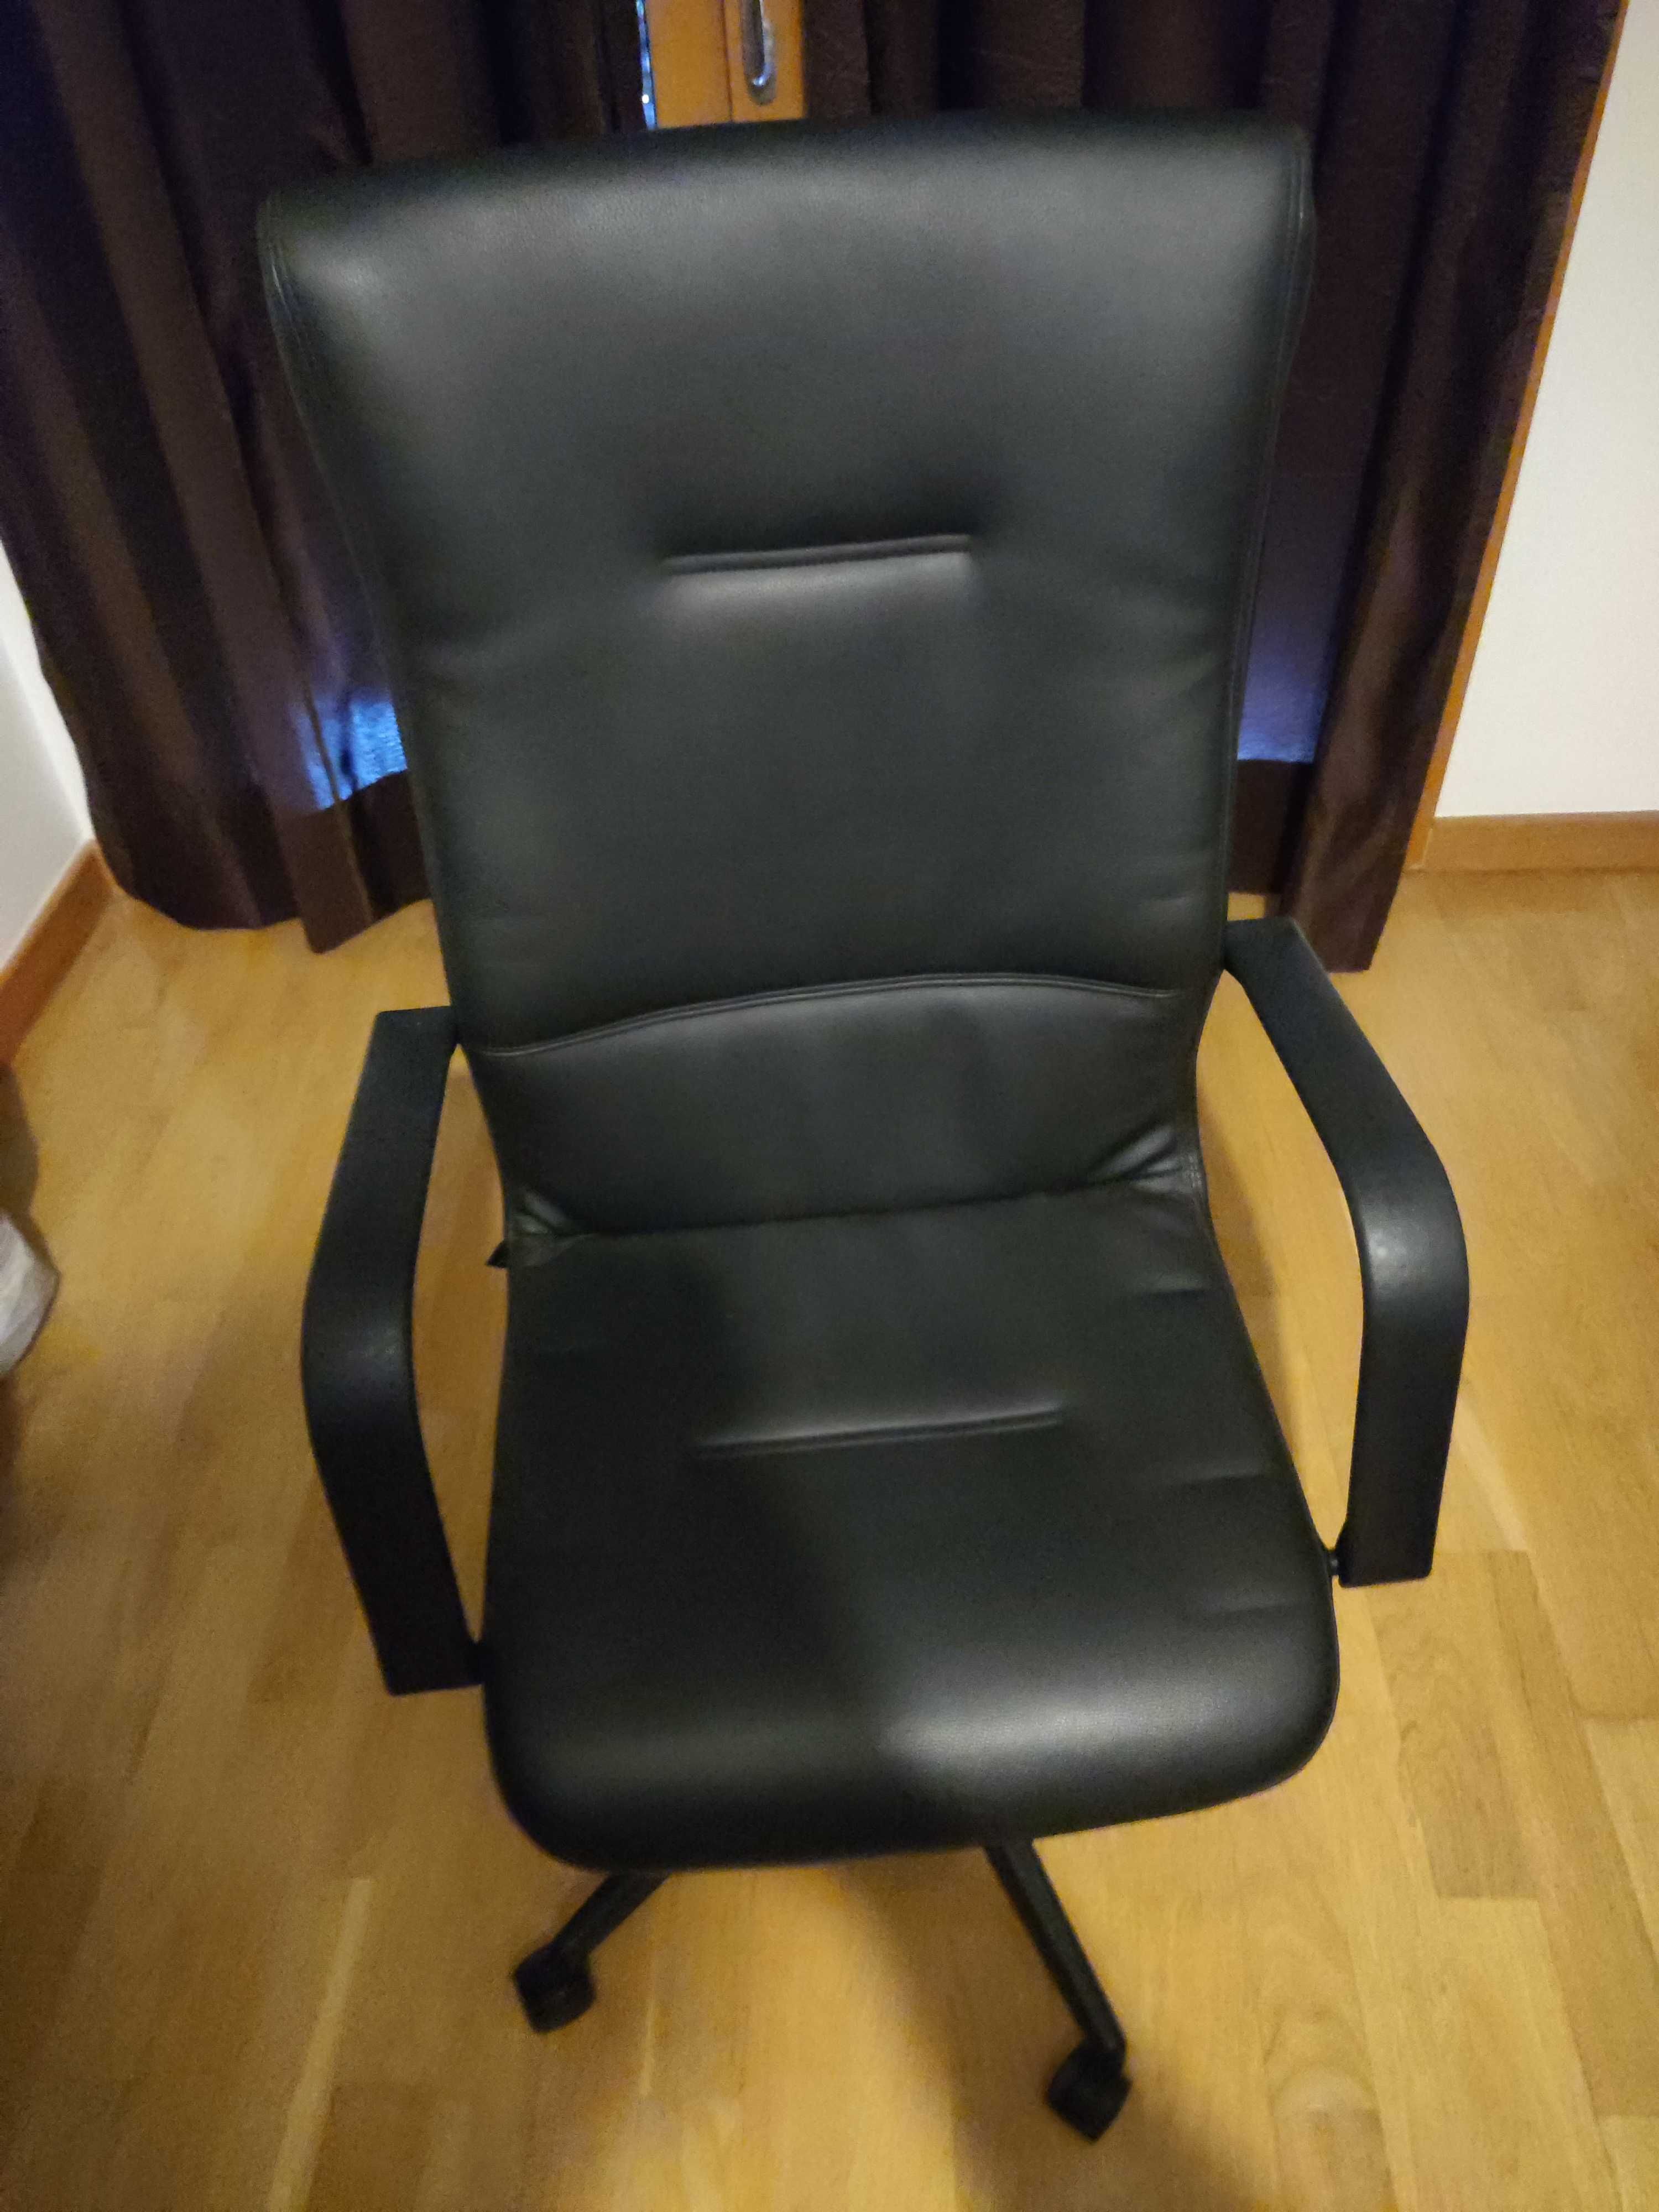 Cadeira executiva rotativa ajustável da marca Cadeinor